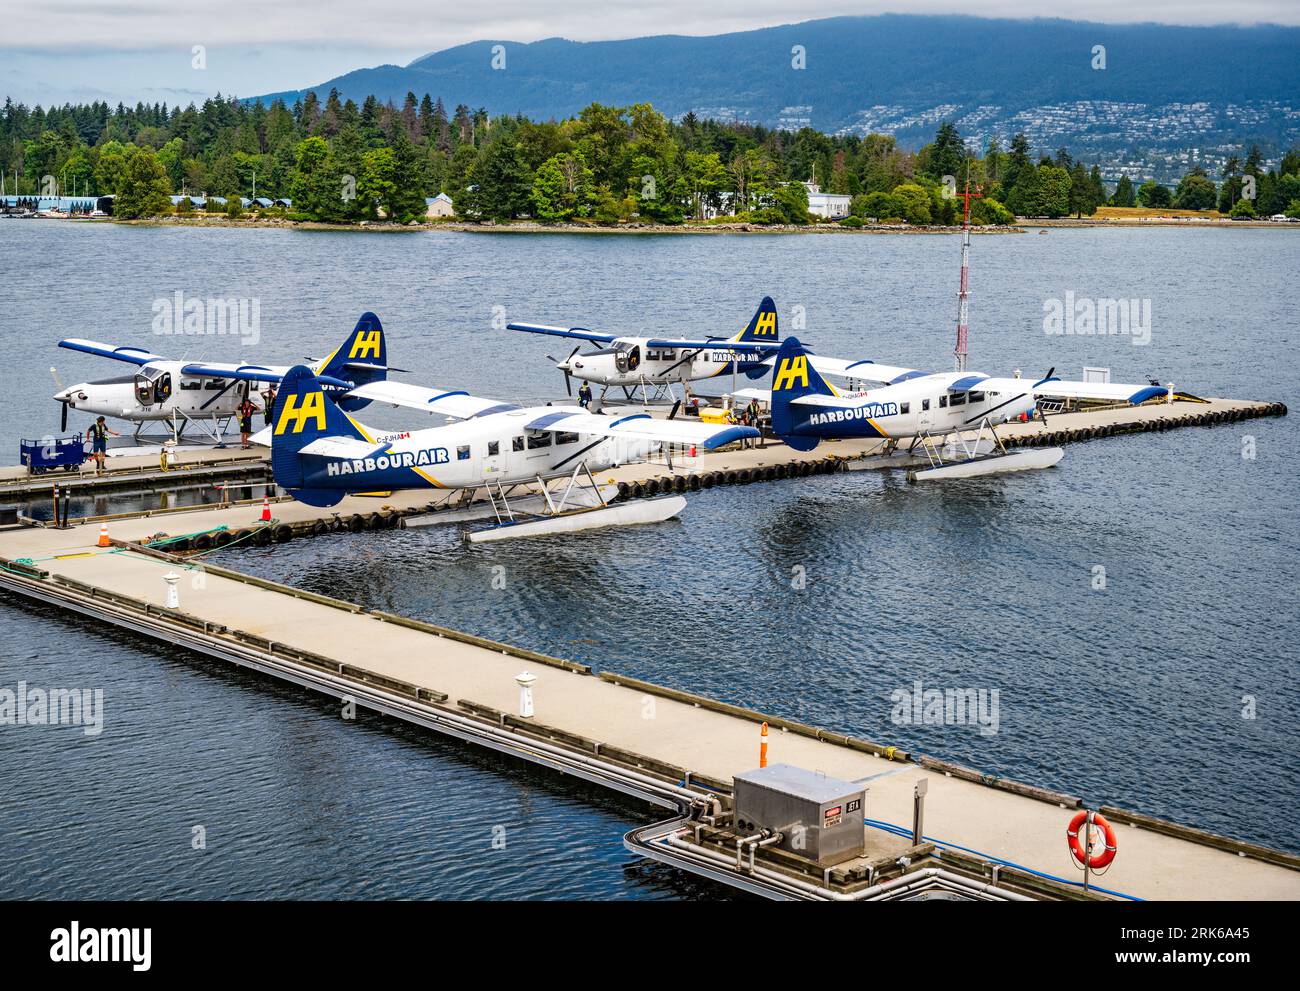 Le Vancouver Harbour Flight Centre est le terminal d'hydravions de Vancouver, offrant des voyages d'affaires et de loisirs en hydravion aux communautés côtières. Banque D'Images